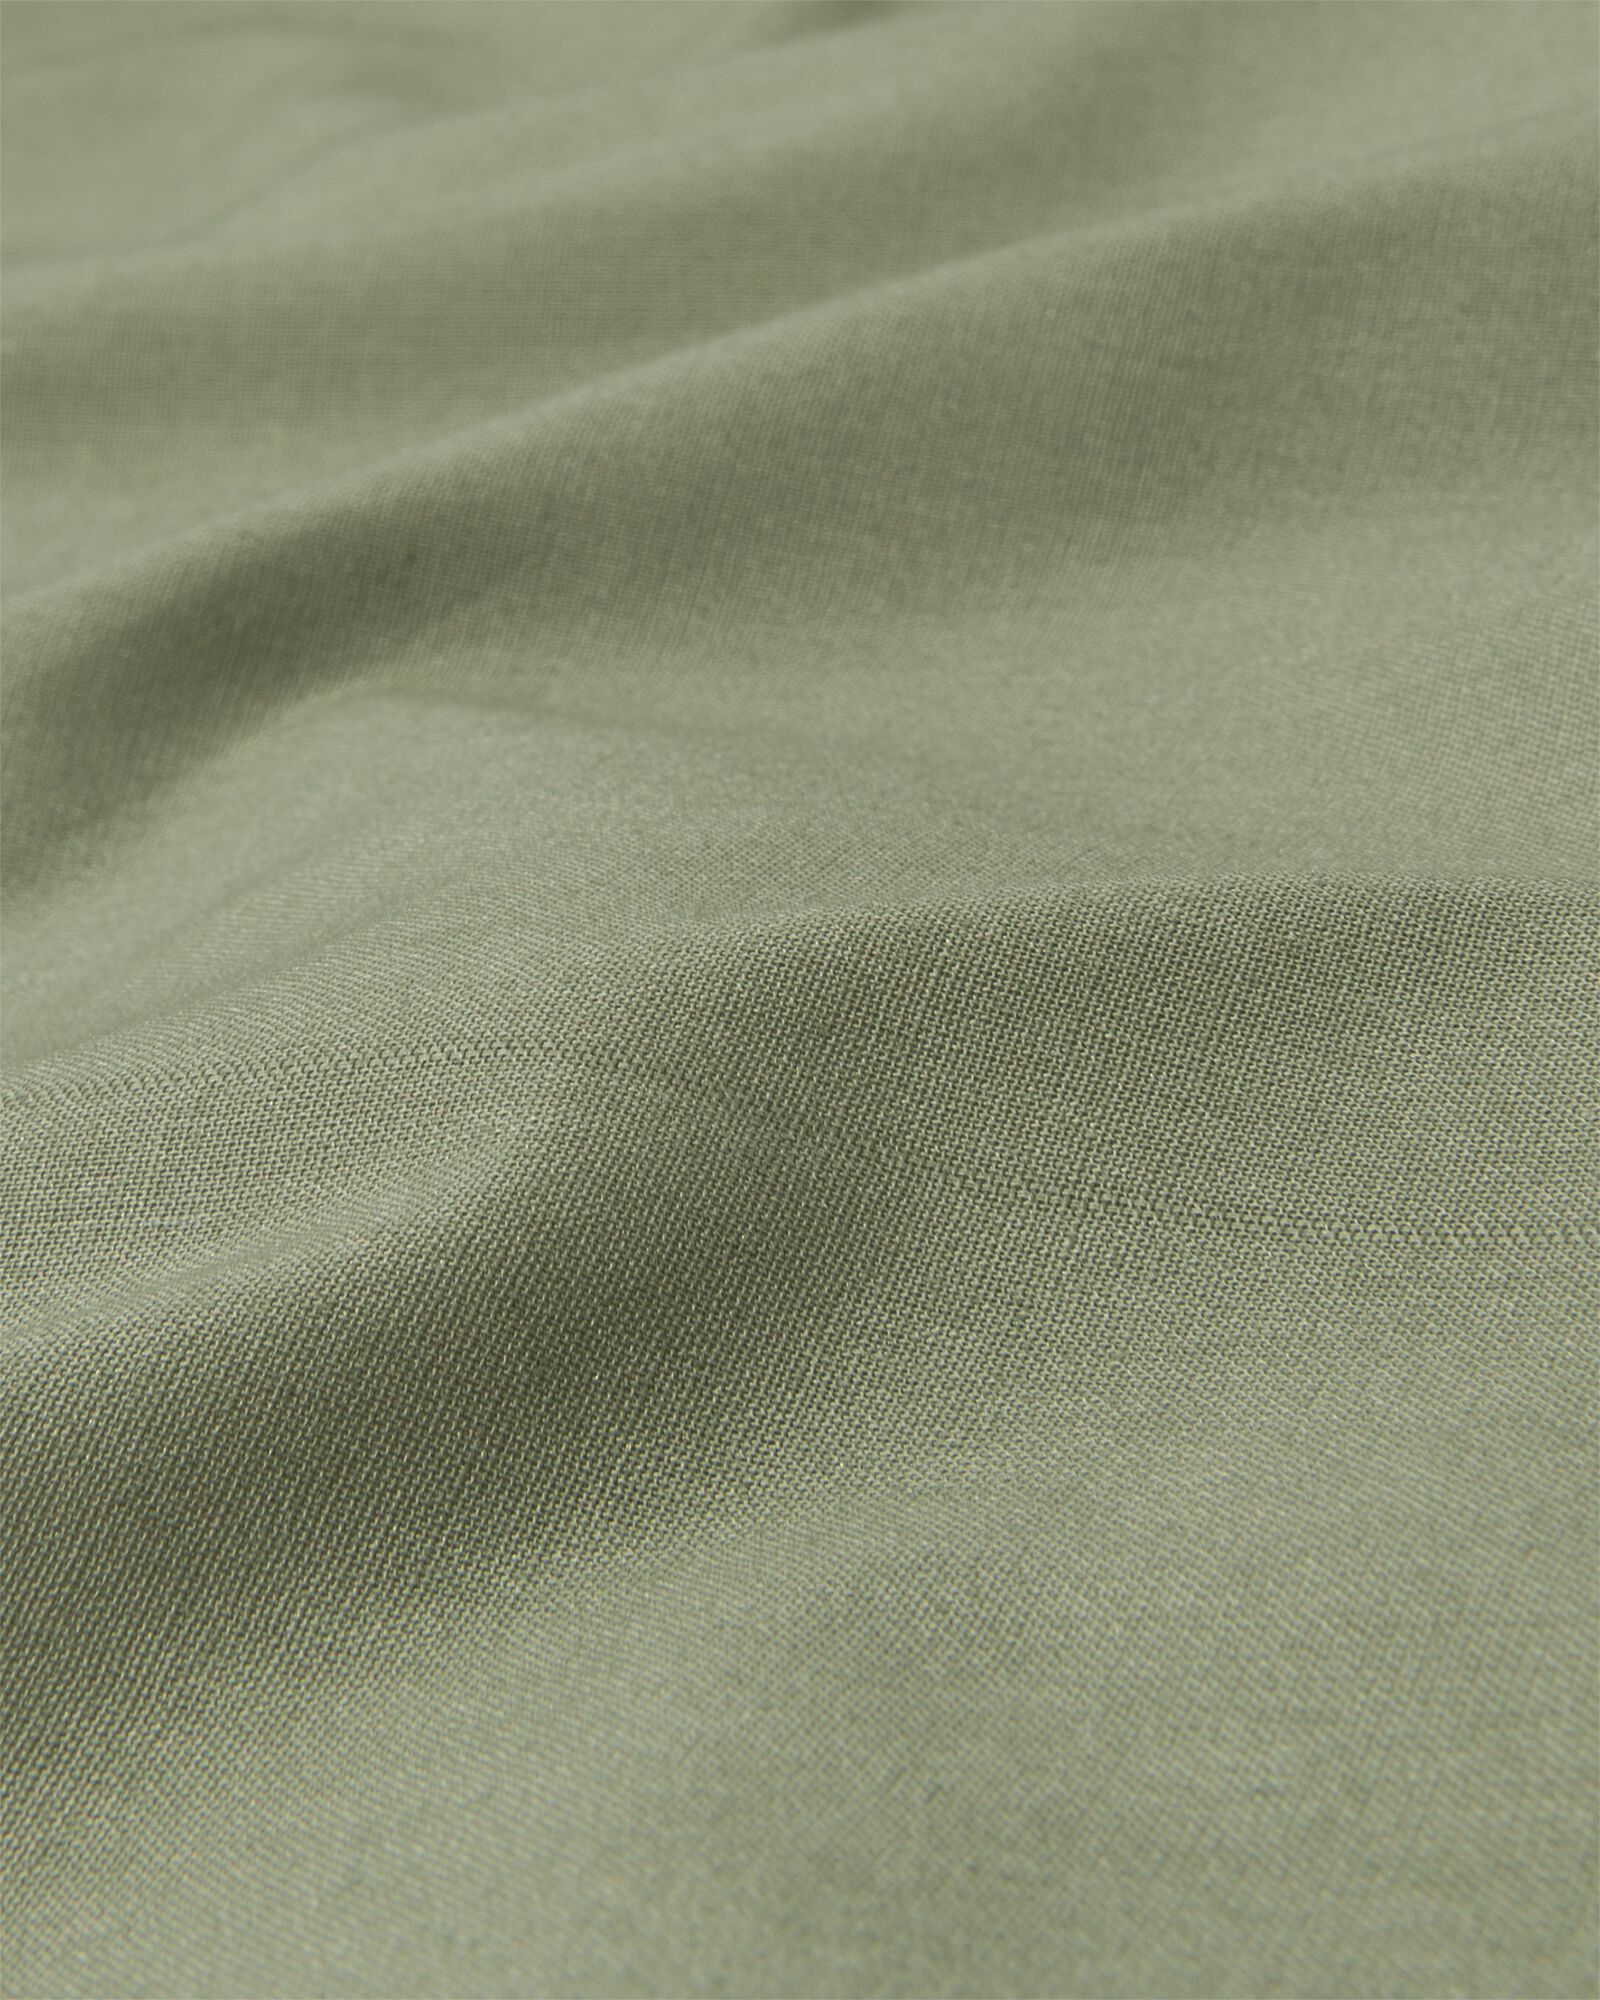 Matratzen-Topper-Spannbettlaken, Soft Cotton, 160 x 200 cm, grün - 5180084 - HEMA